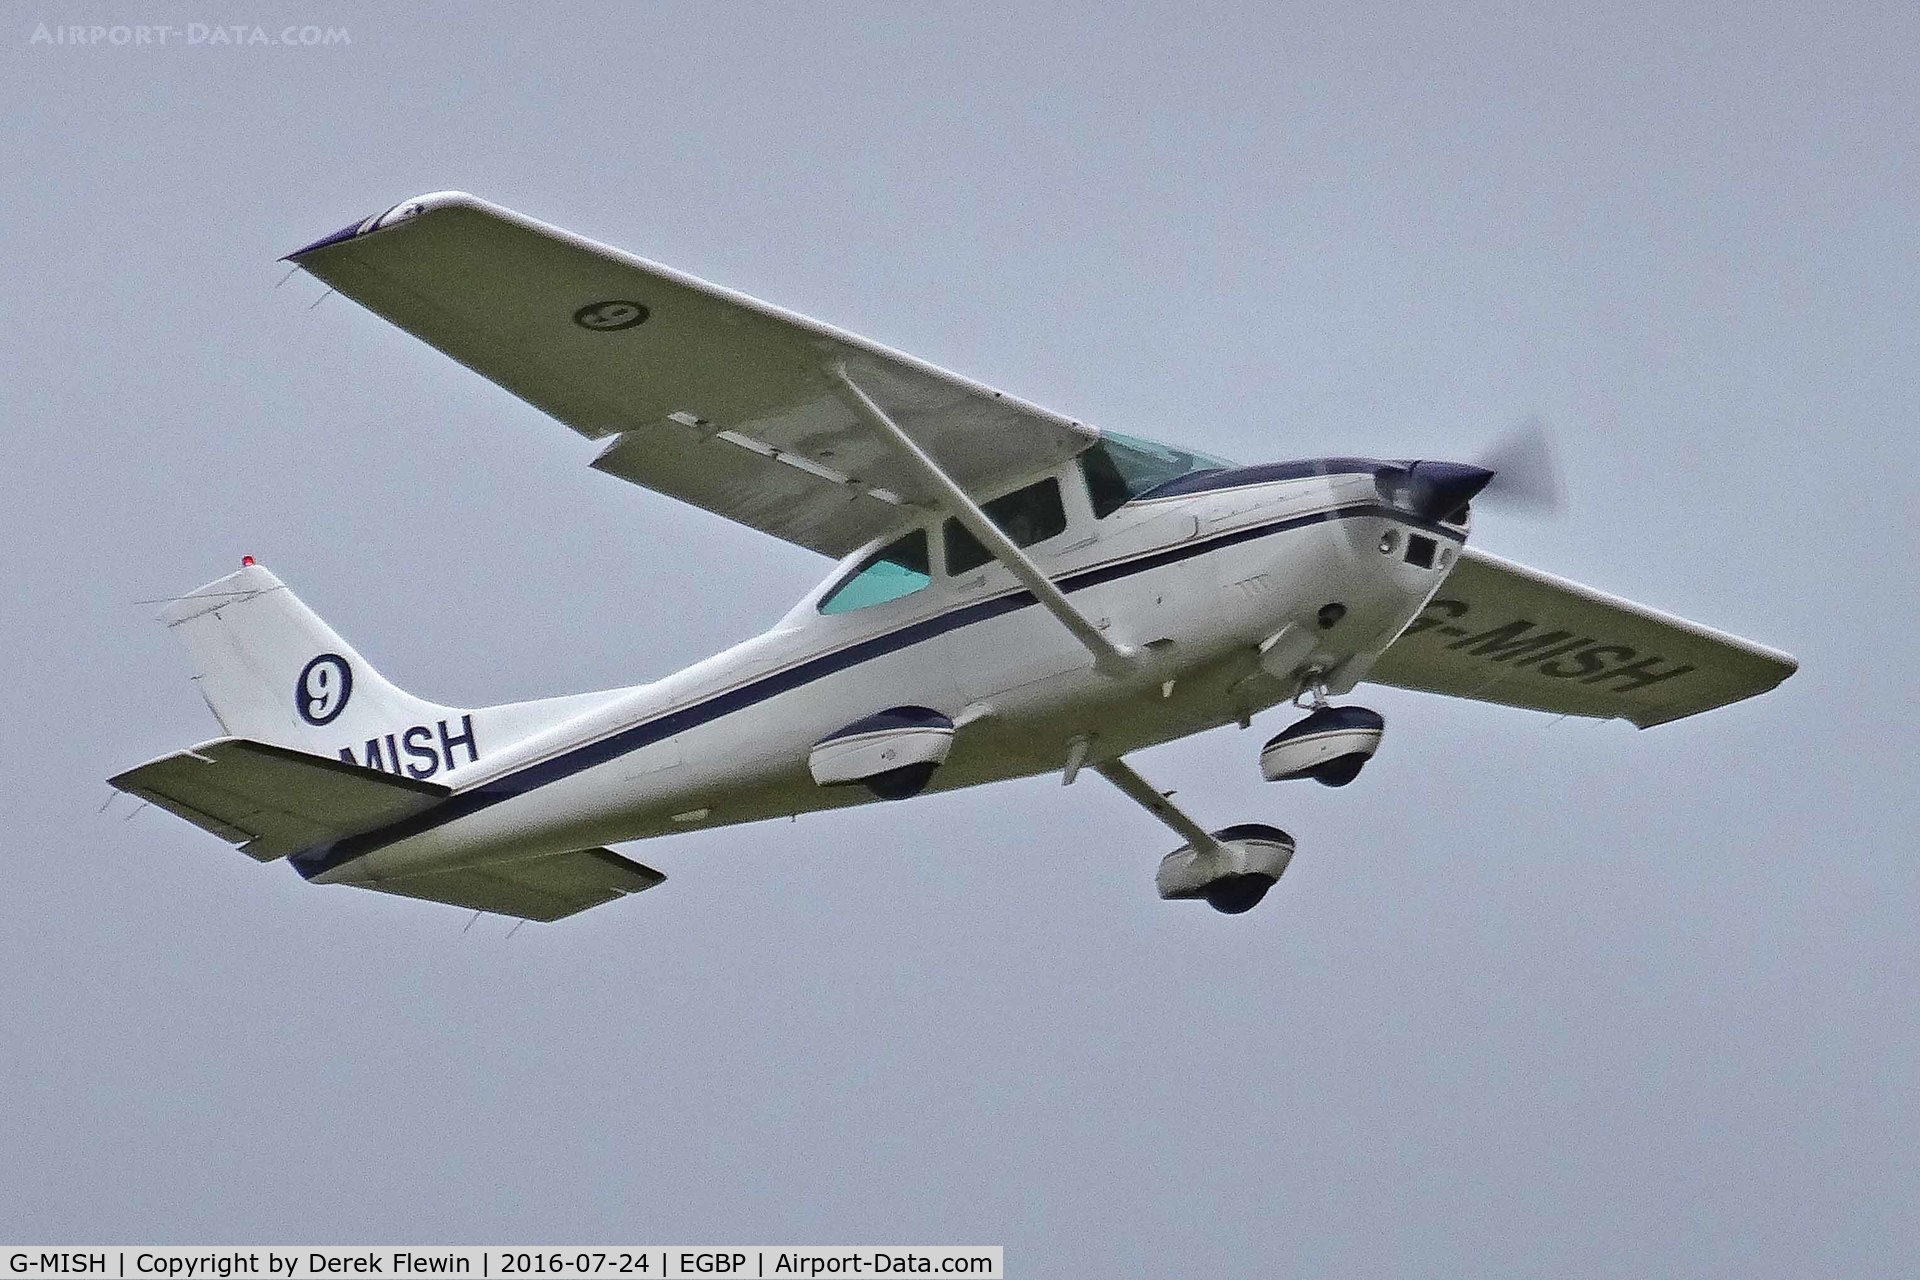 G-MISH, 1981 Cessna 182R Skylane C/N 182-67888, skylane, Finmere Buckinghamshire based, previously n6397N, G-BIXT, G-RFAB, seen at the Skysport Fly In.